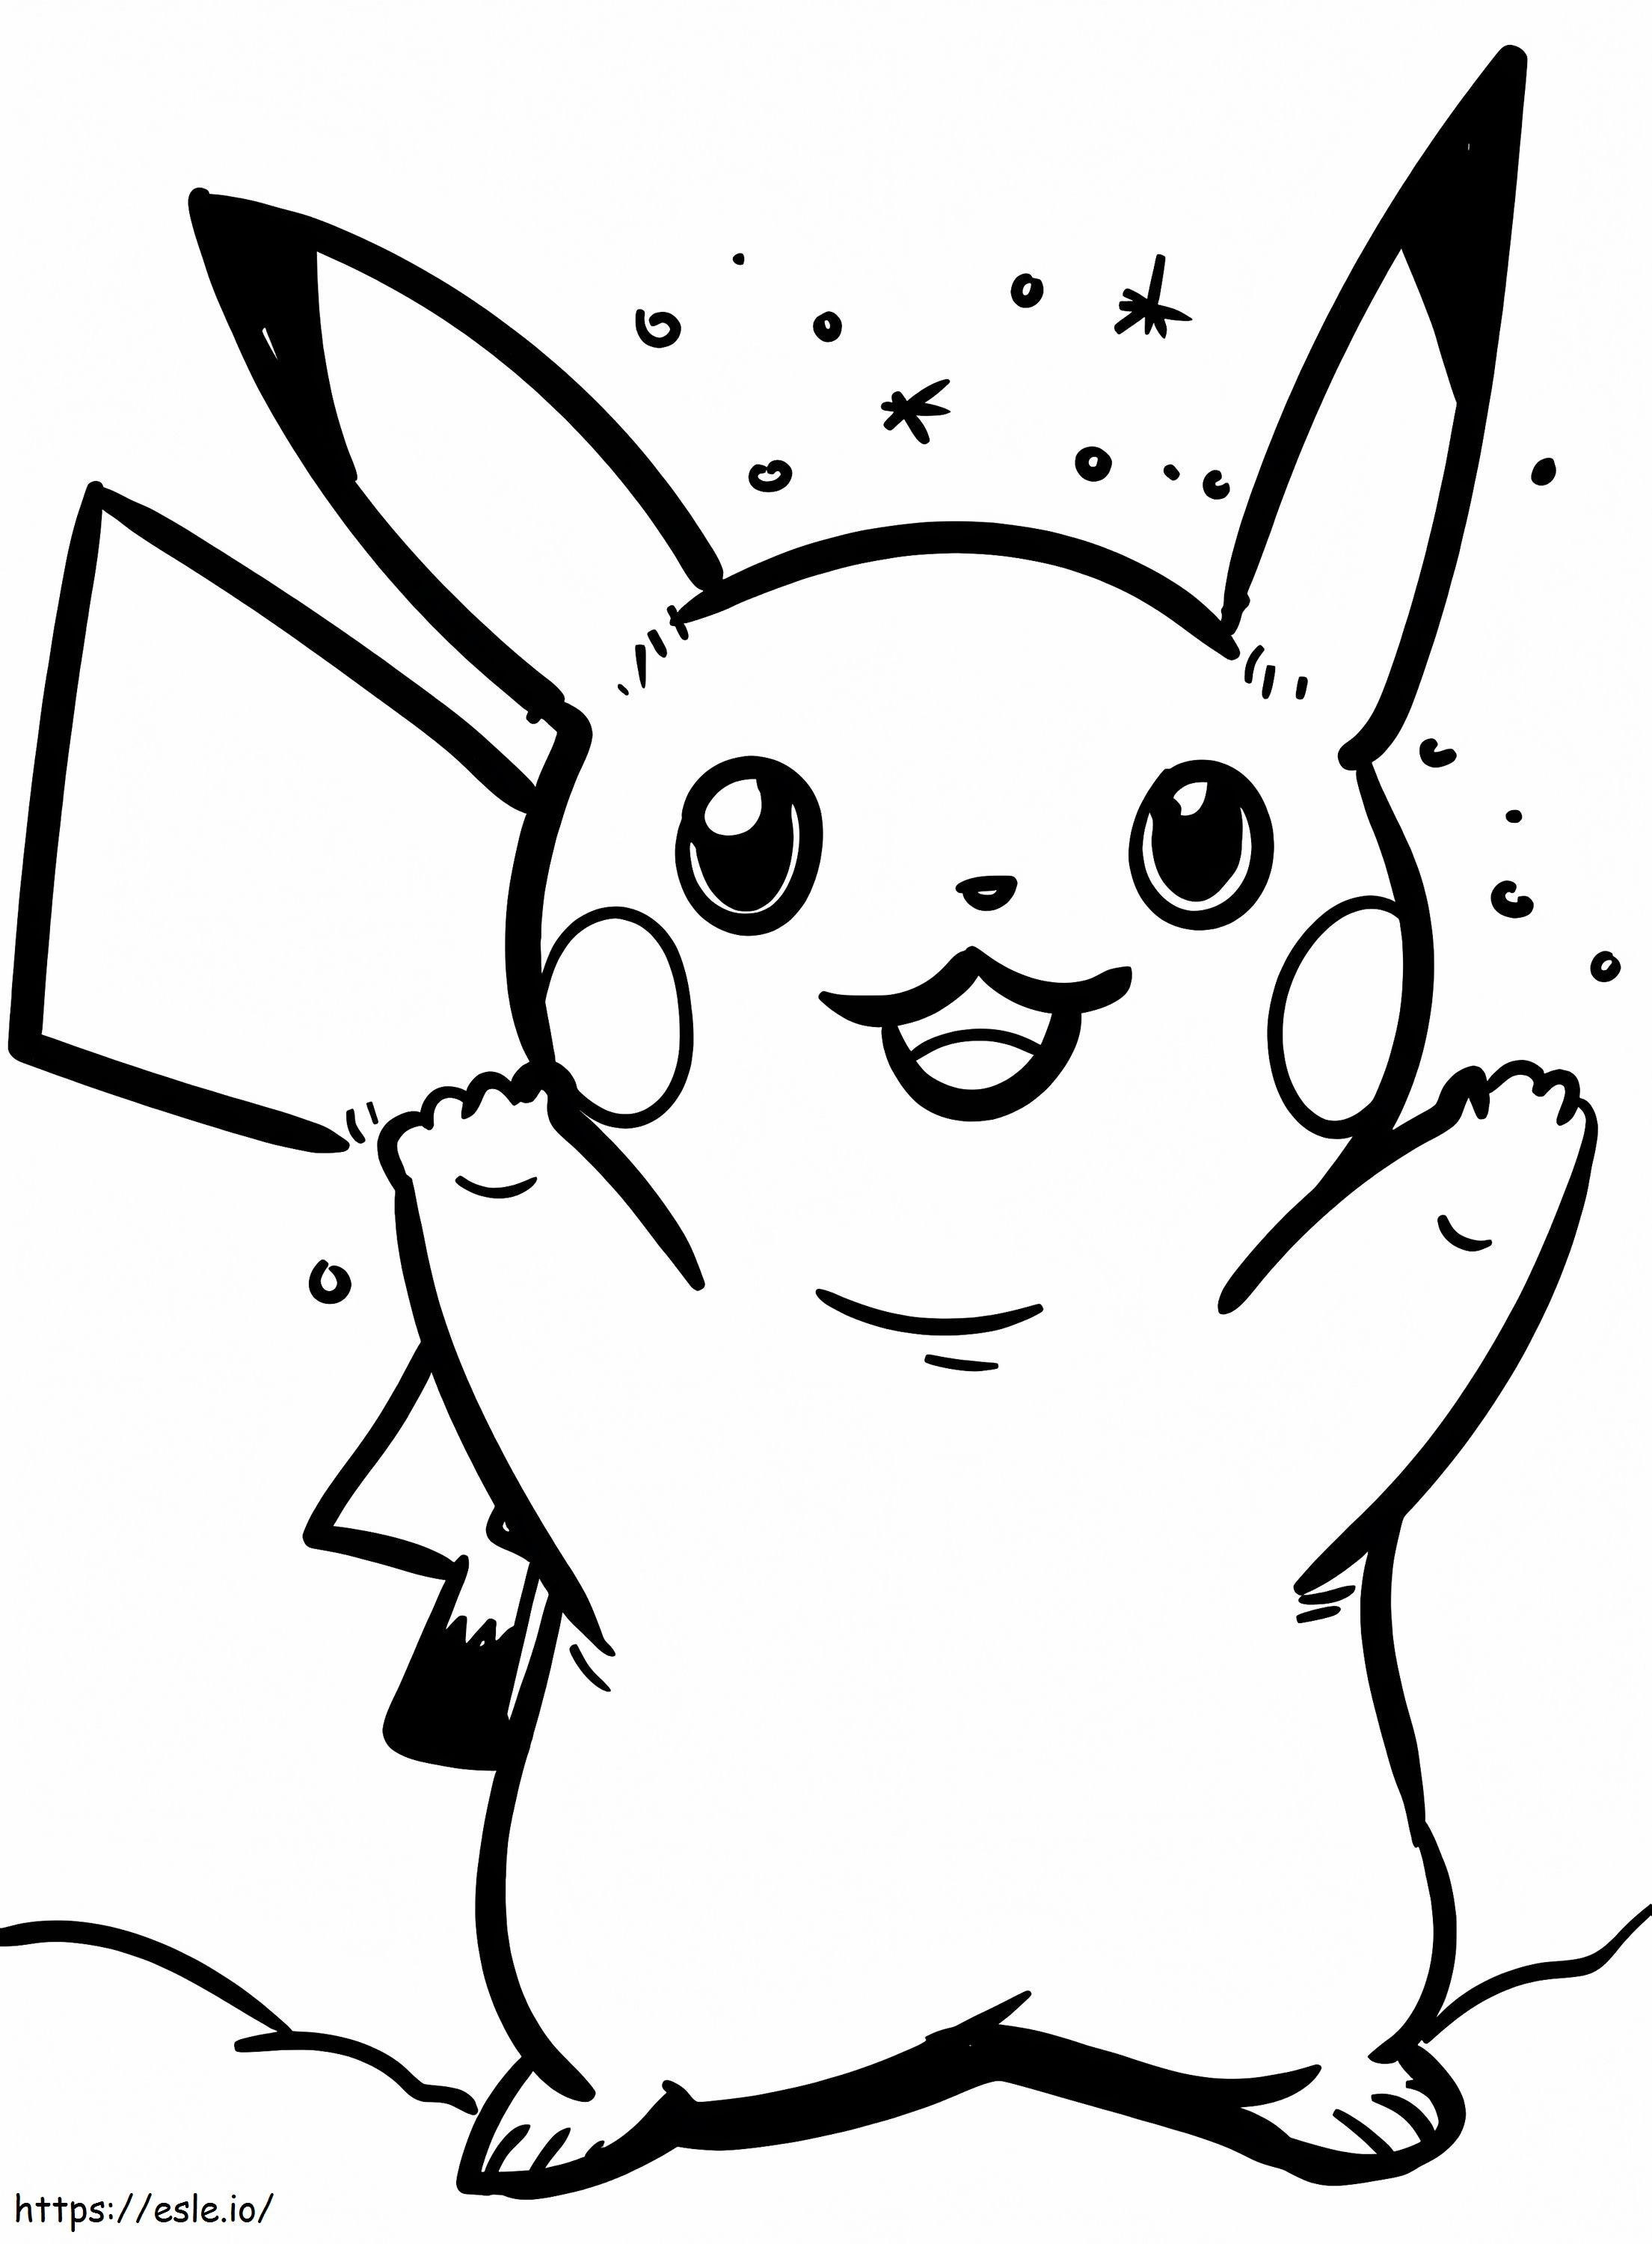 Pikachu zum Ausdrucken ausmalbilder